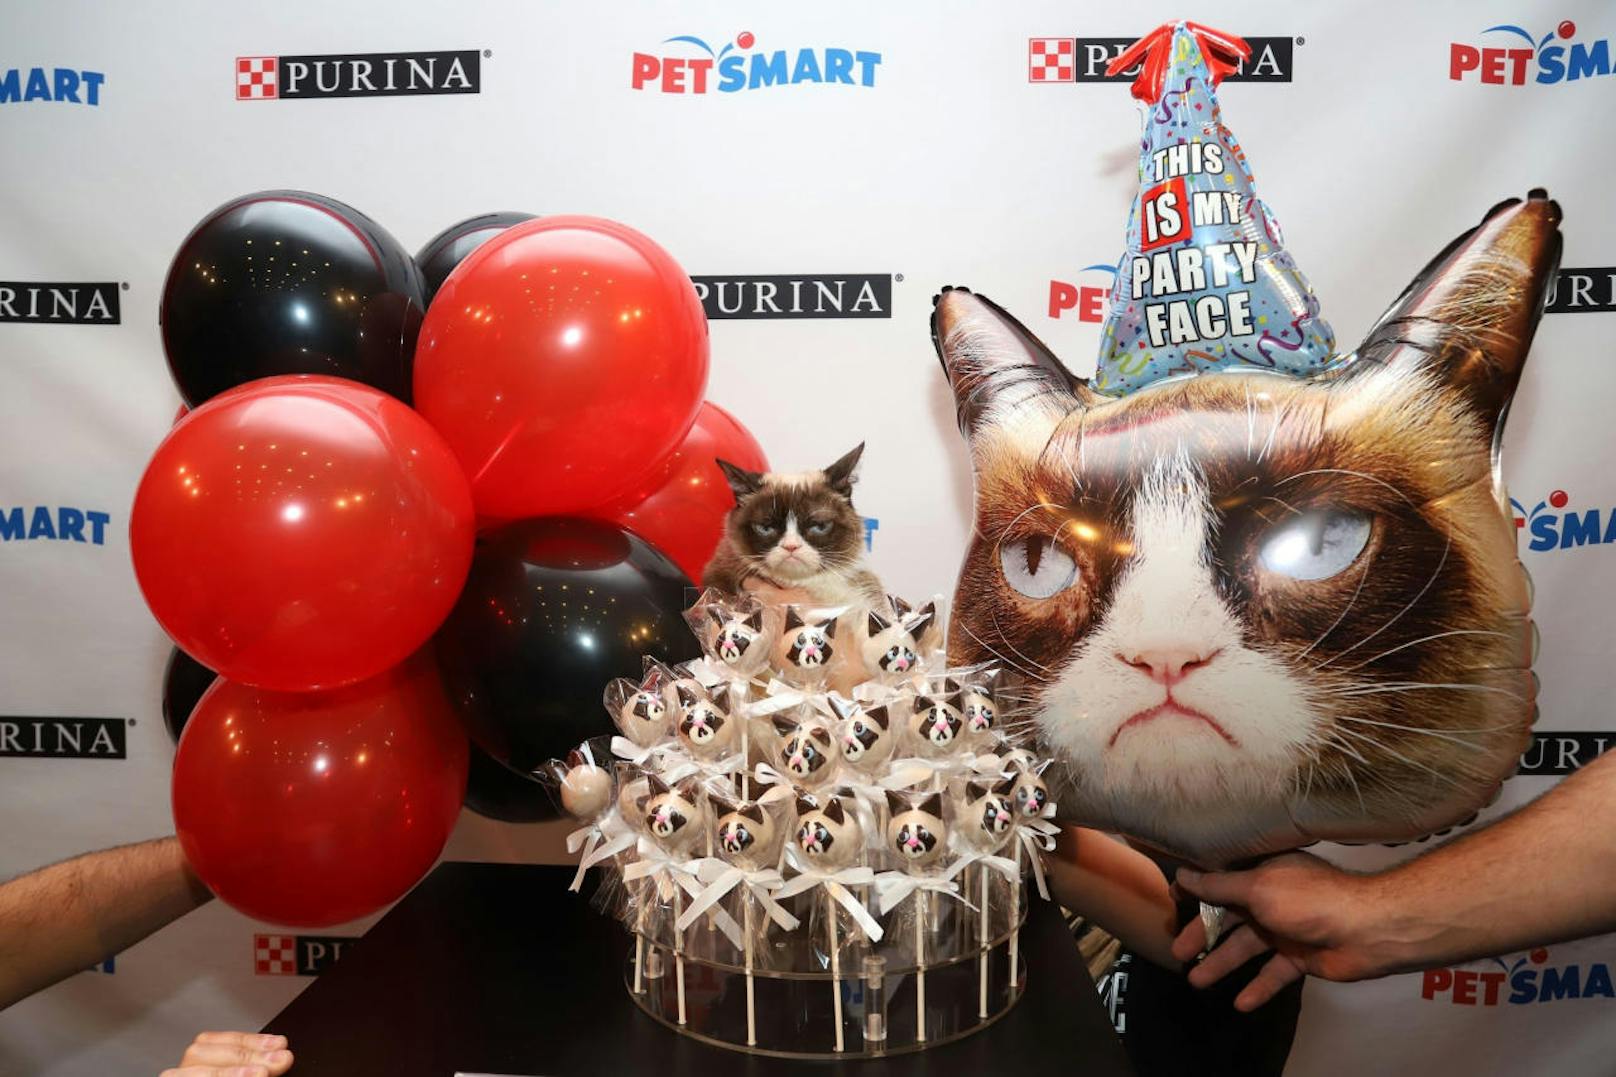 Alles Gute zum 6. Geburtstag! "Das ist mein Party-Gesicht": Grumpy Cats angefressenes G'schau ist lengendär und machte die Mieze zu einem weltweiten Star.